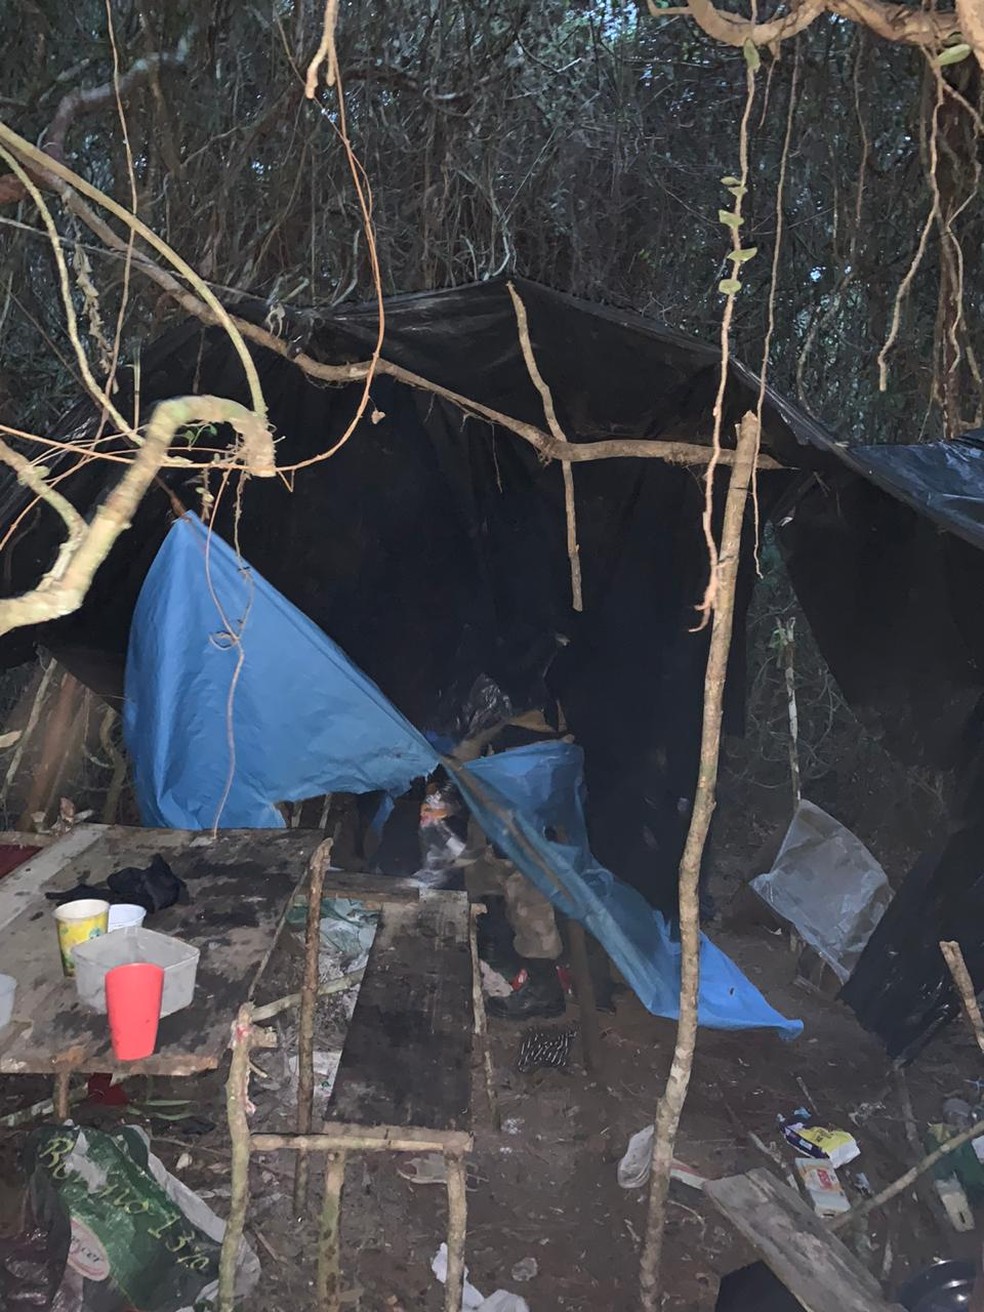 Adolescente foi encontrada em acampamento em condições insalúbres  — Foto: Polícia Civil/Divulgação